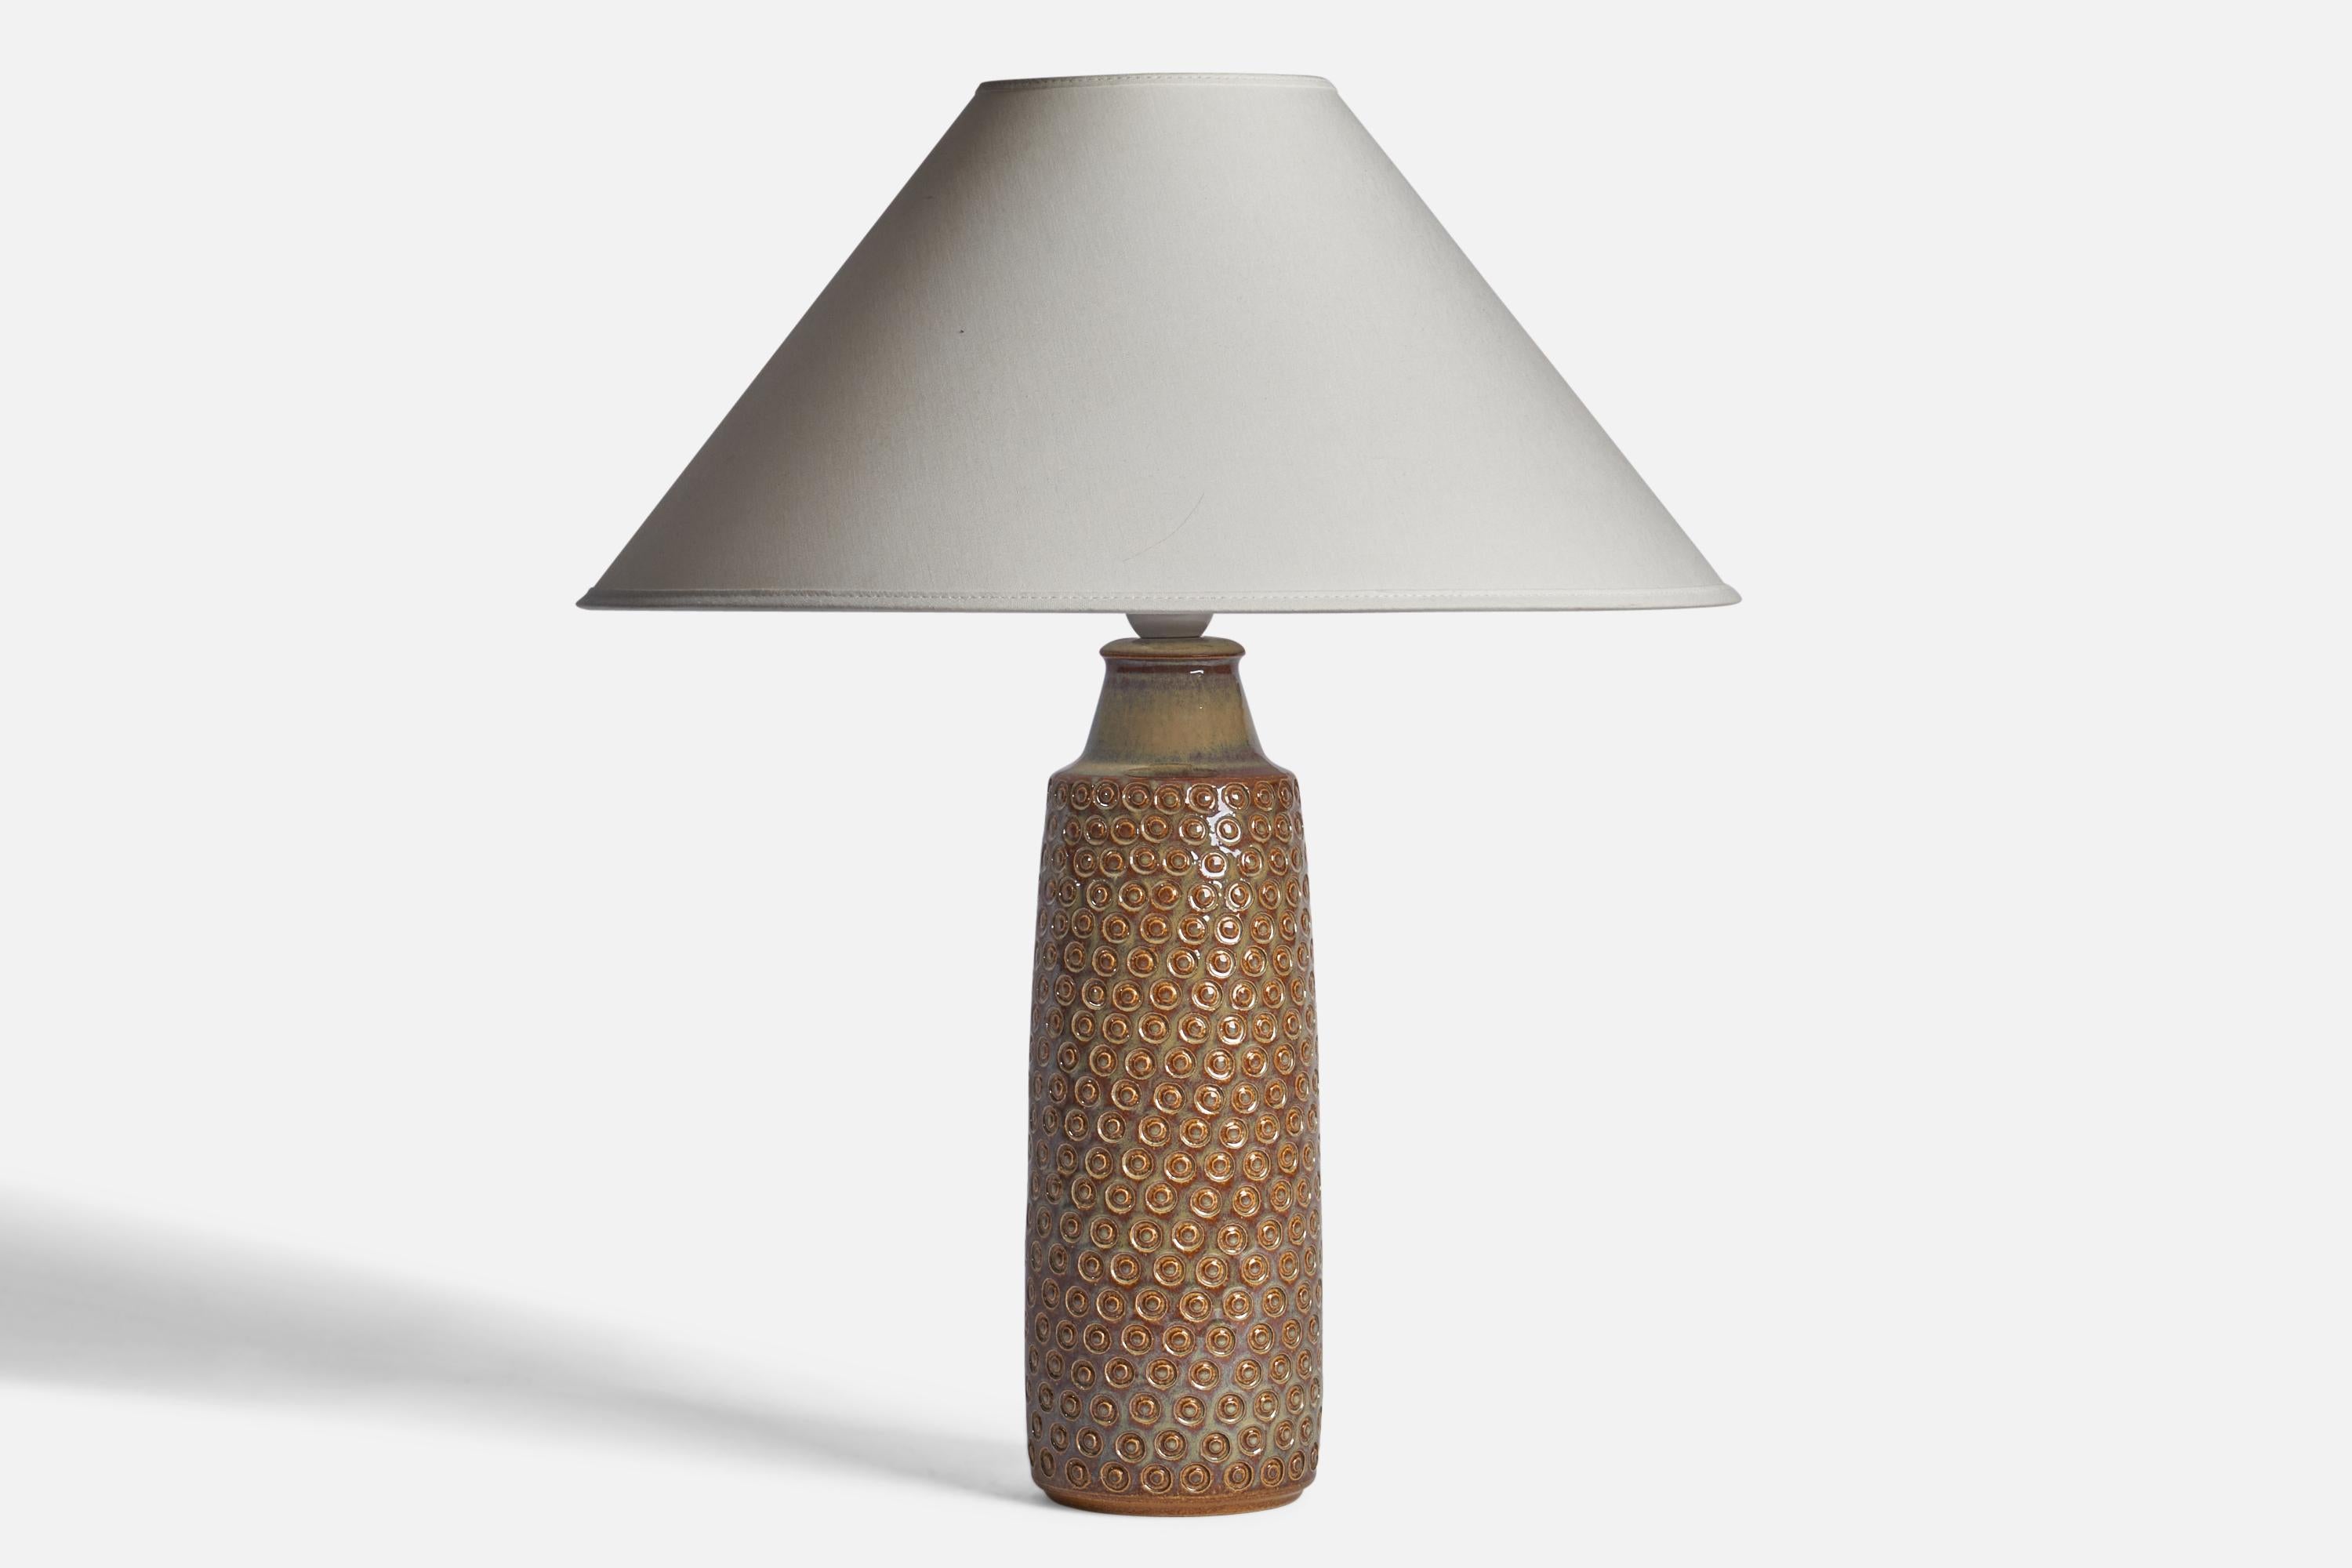 Tischlampe aus braun glasiertem, geritztem Steingut, entworfen und hergestellt von 
Søholm, Dänemark, 1960er Jahre.

Abmessungen der Lampe (Zoll): 14,85